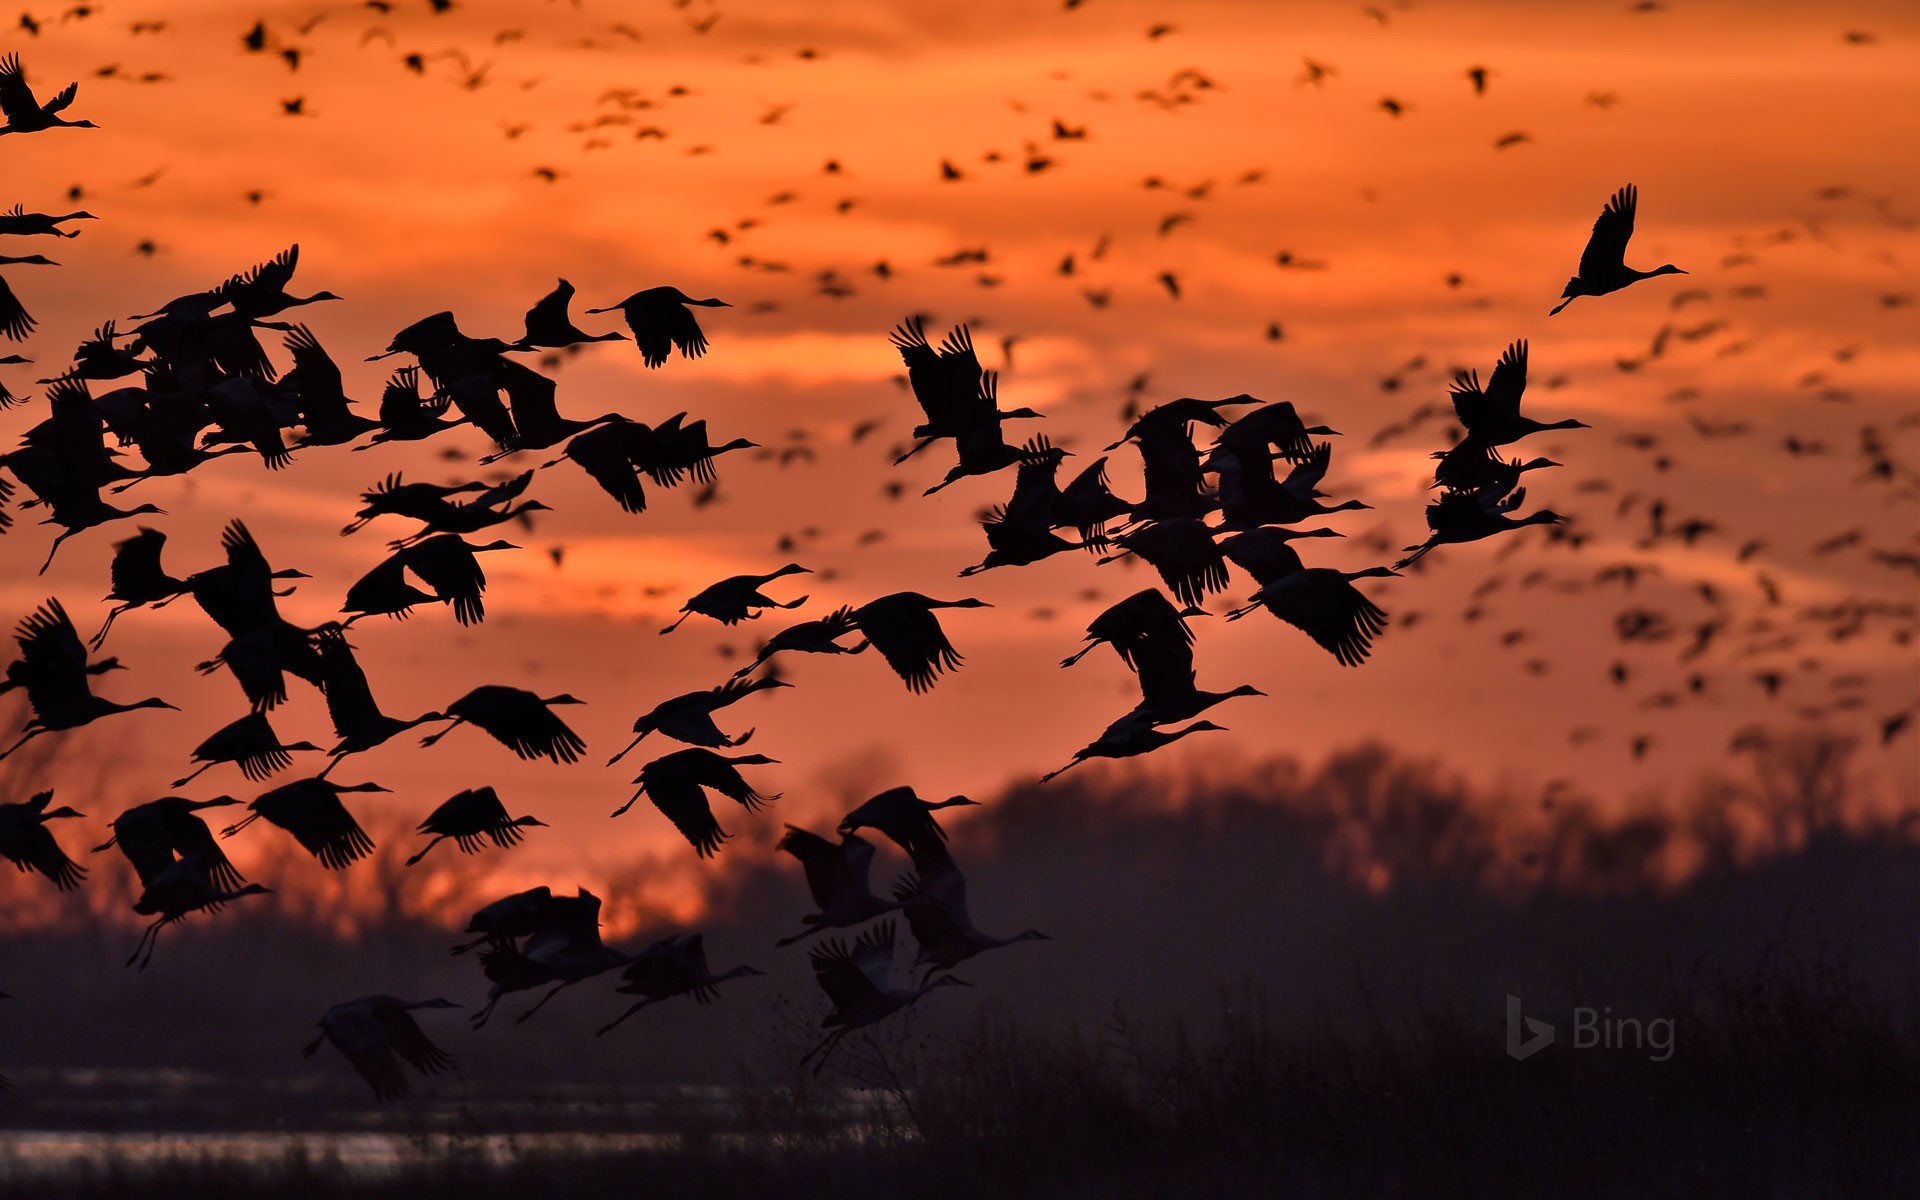 Sandhill cranes taking flight over the Platte River near Kearney, Nebraska